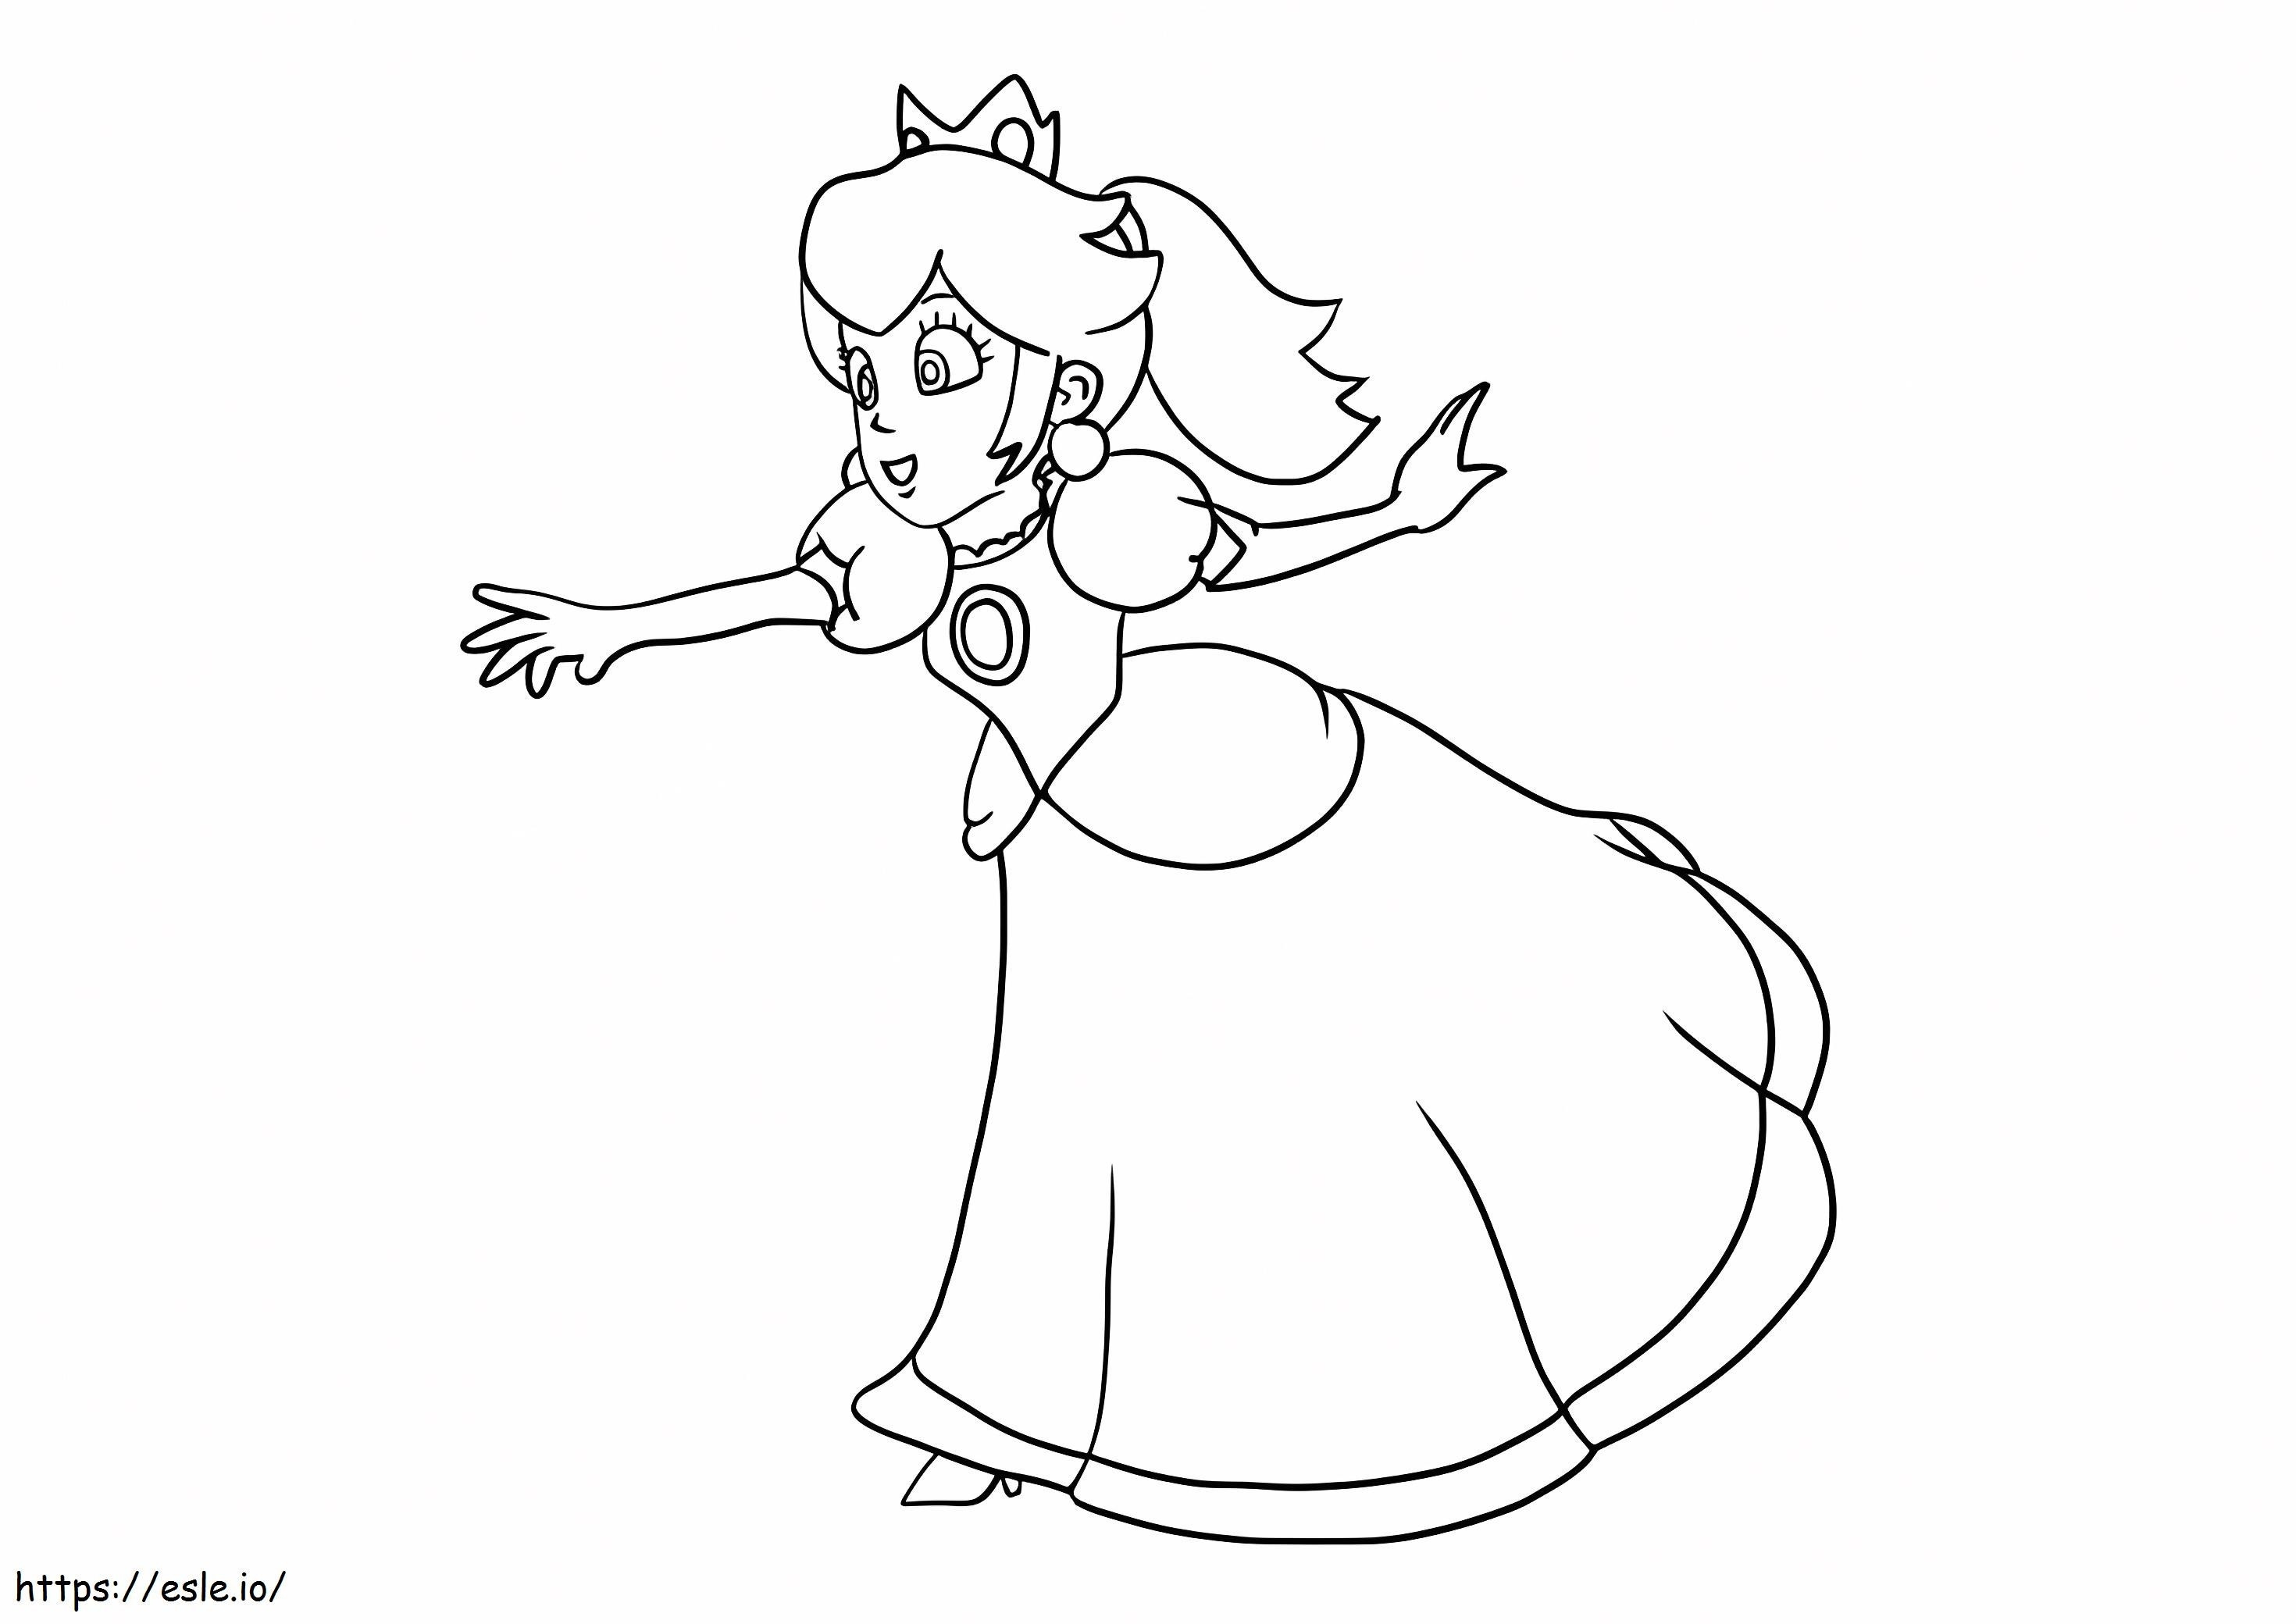 Princess Peach Walking coloring page